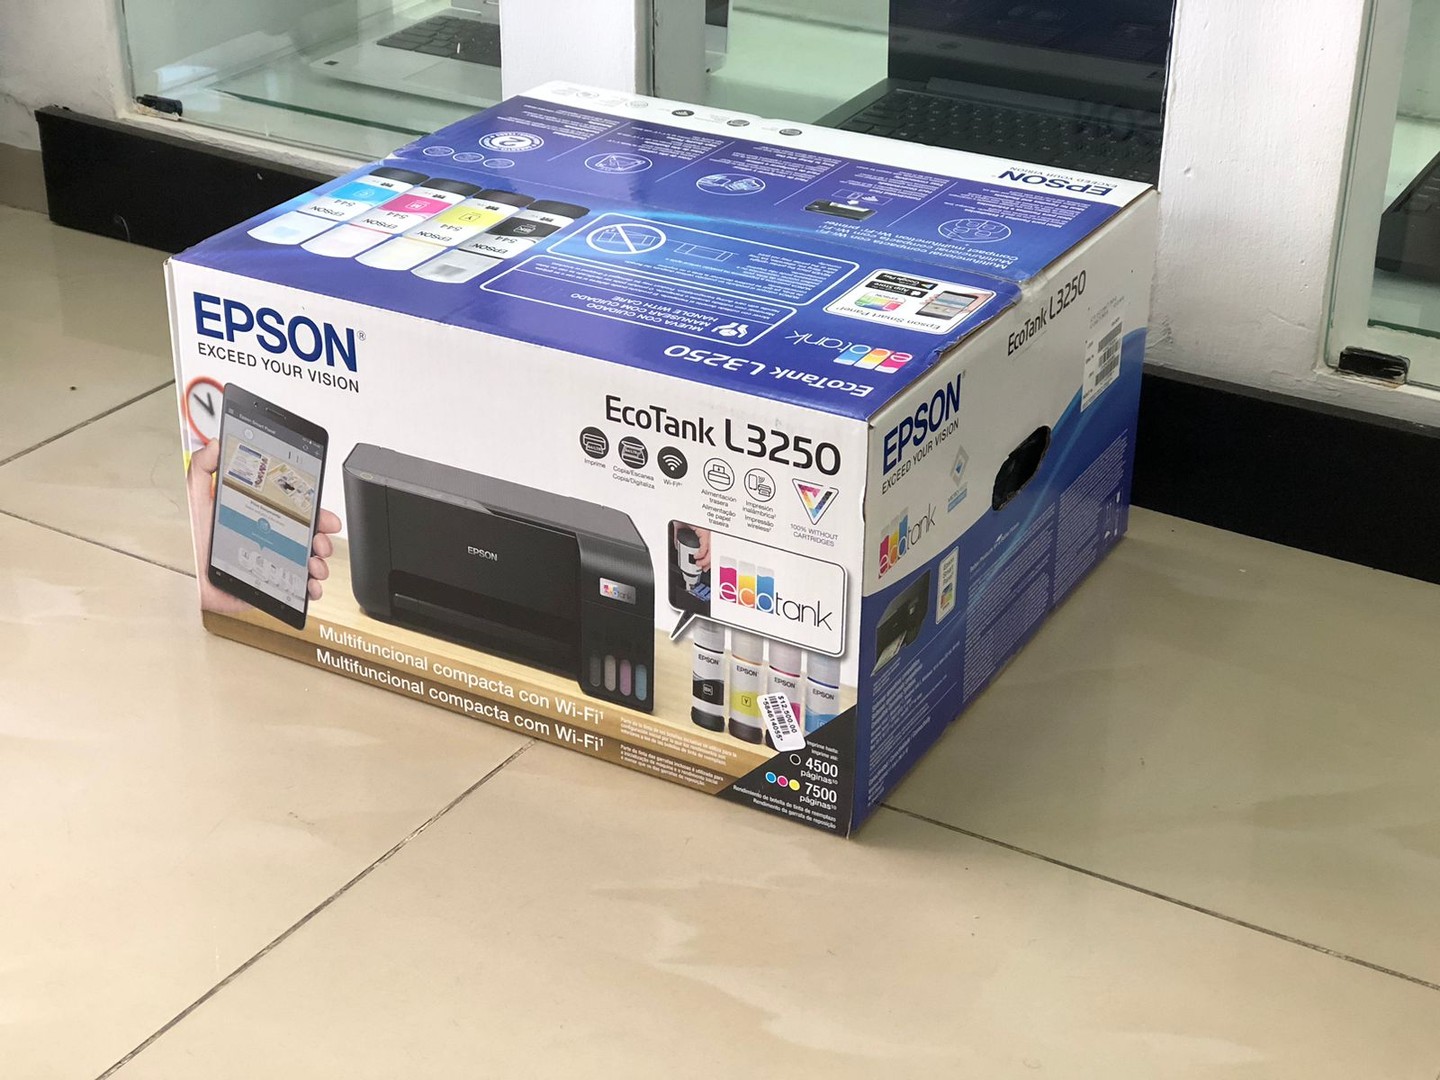 impresoras y scanners - Multifuncional Impresora, Wifi Epson L3250  mas garantía
Conexión al Celular 3